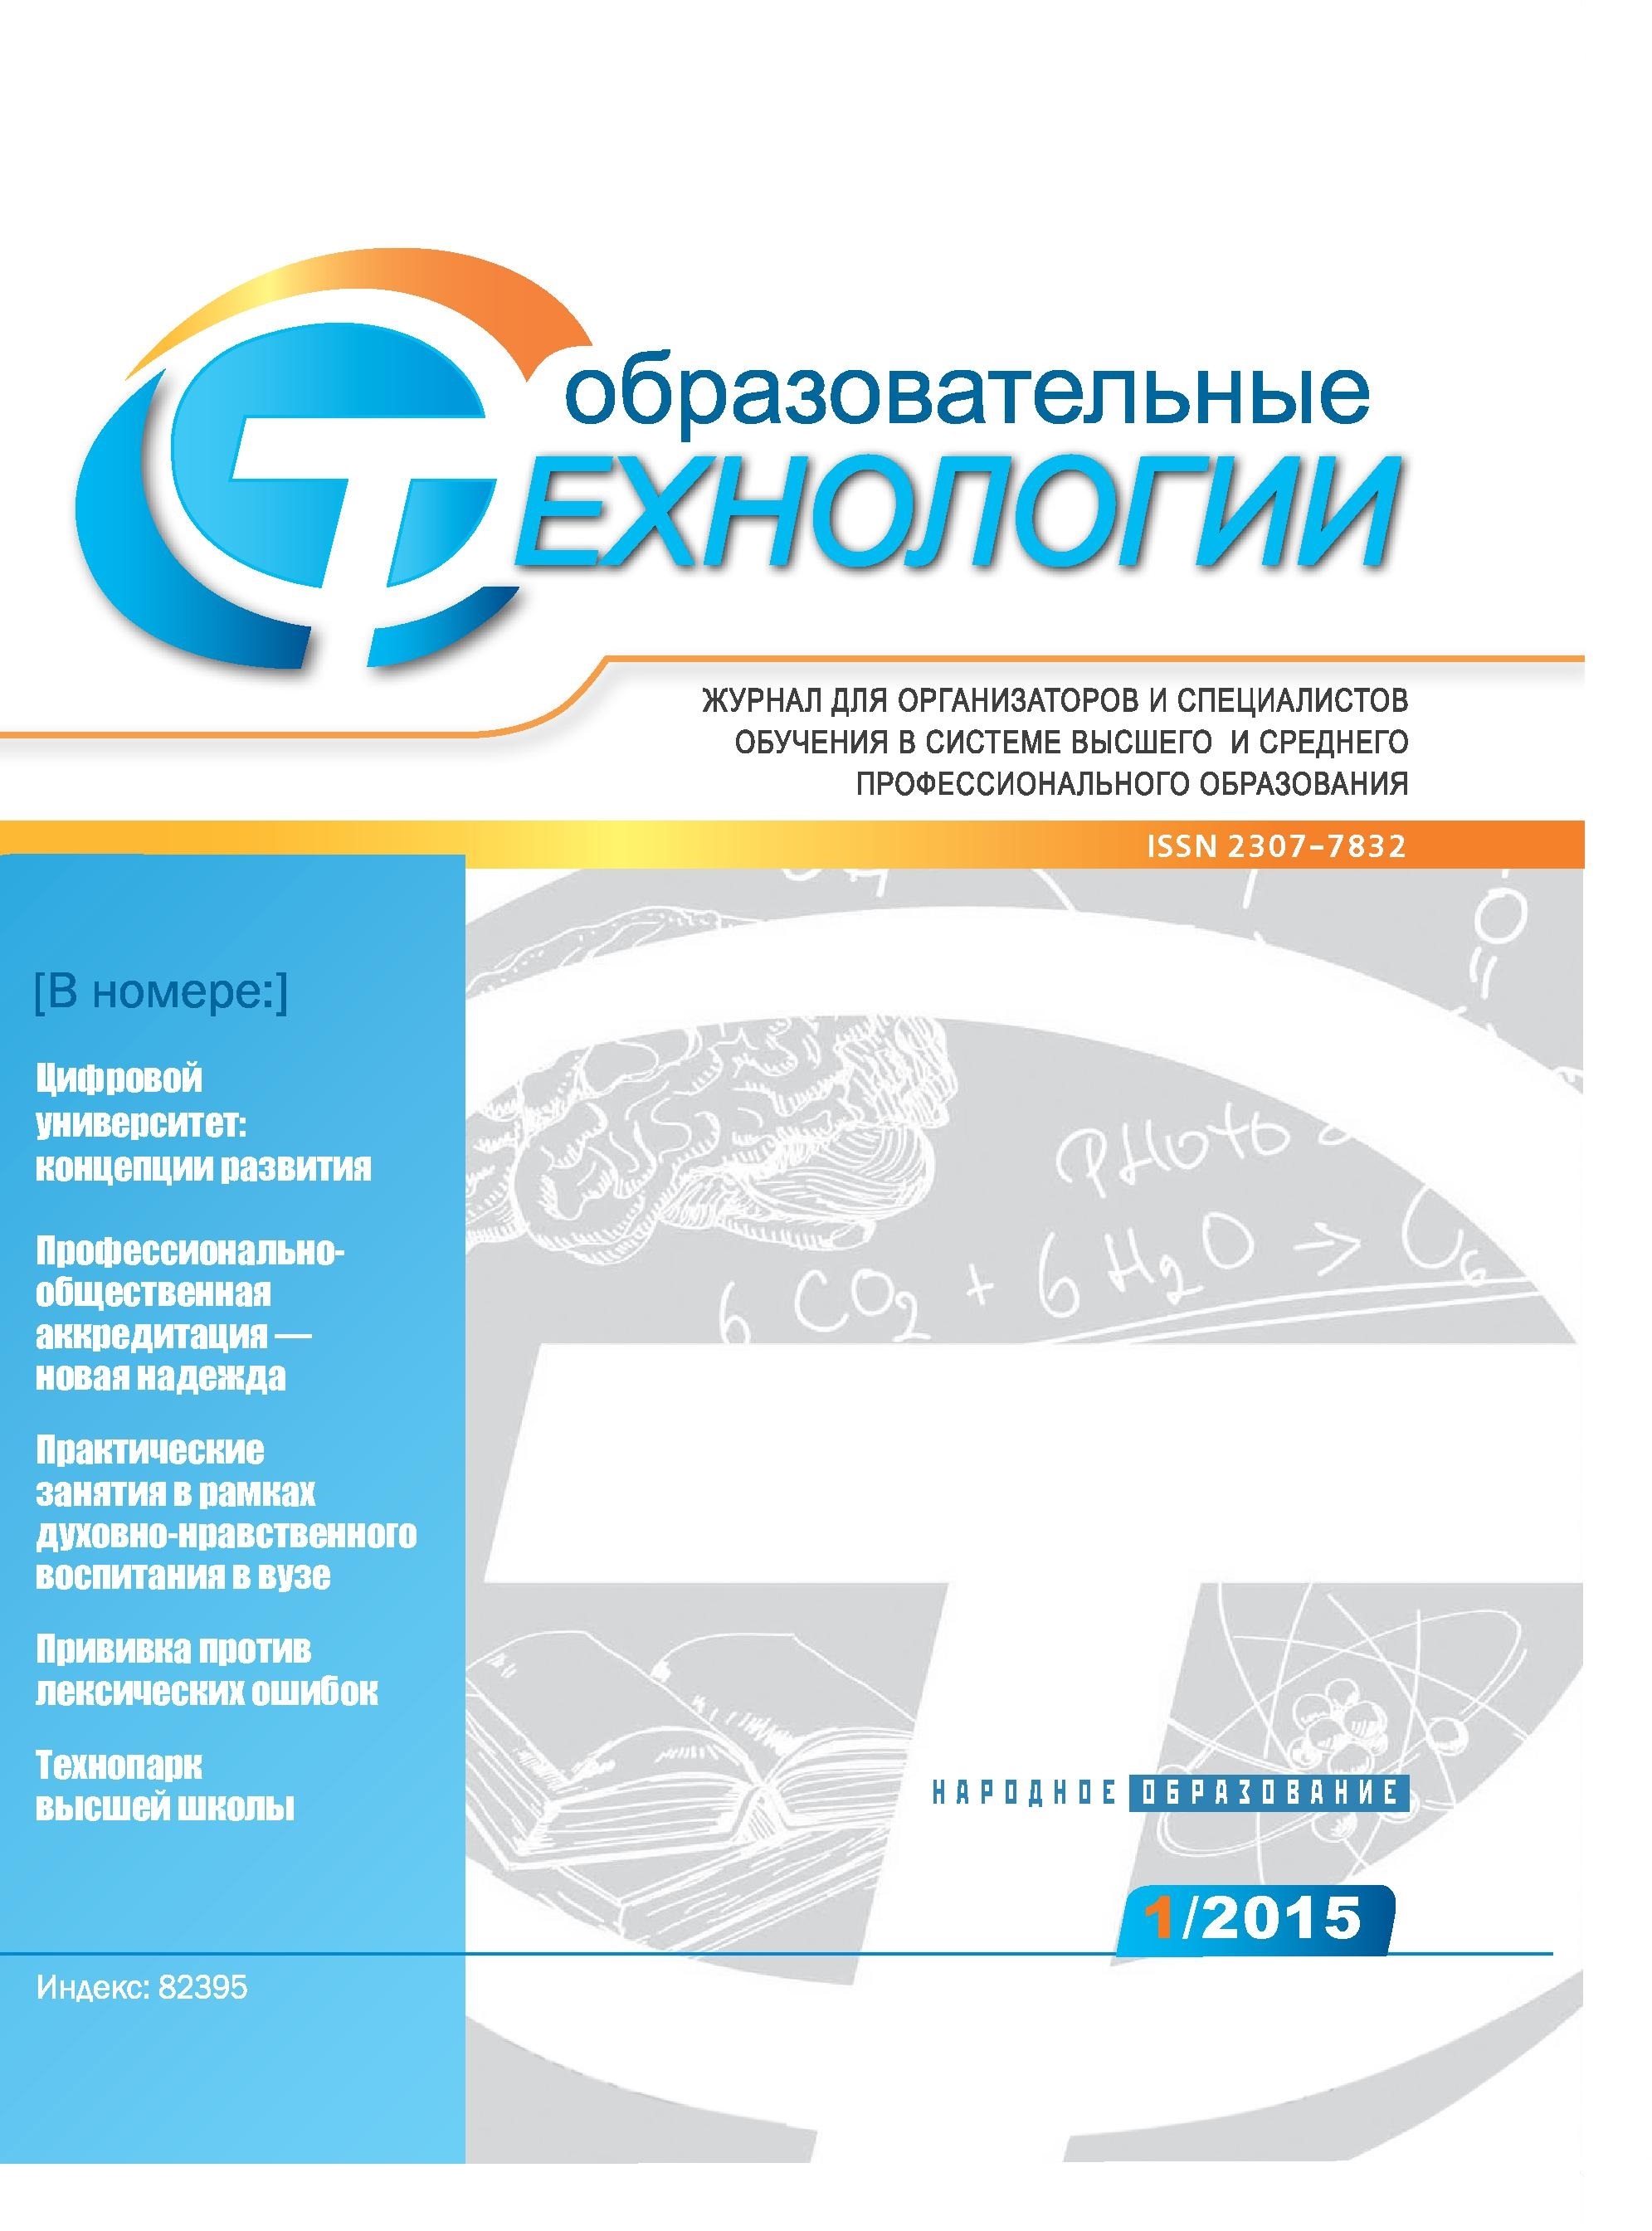 Опубликован №1 журнала "Образовательные технологии" за 2015 г.